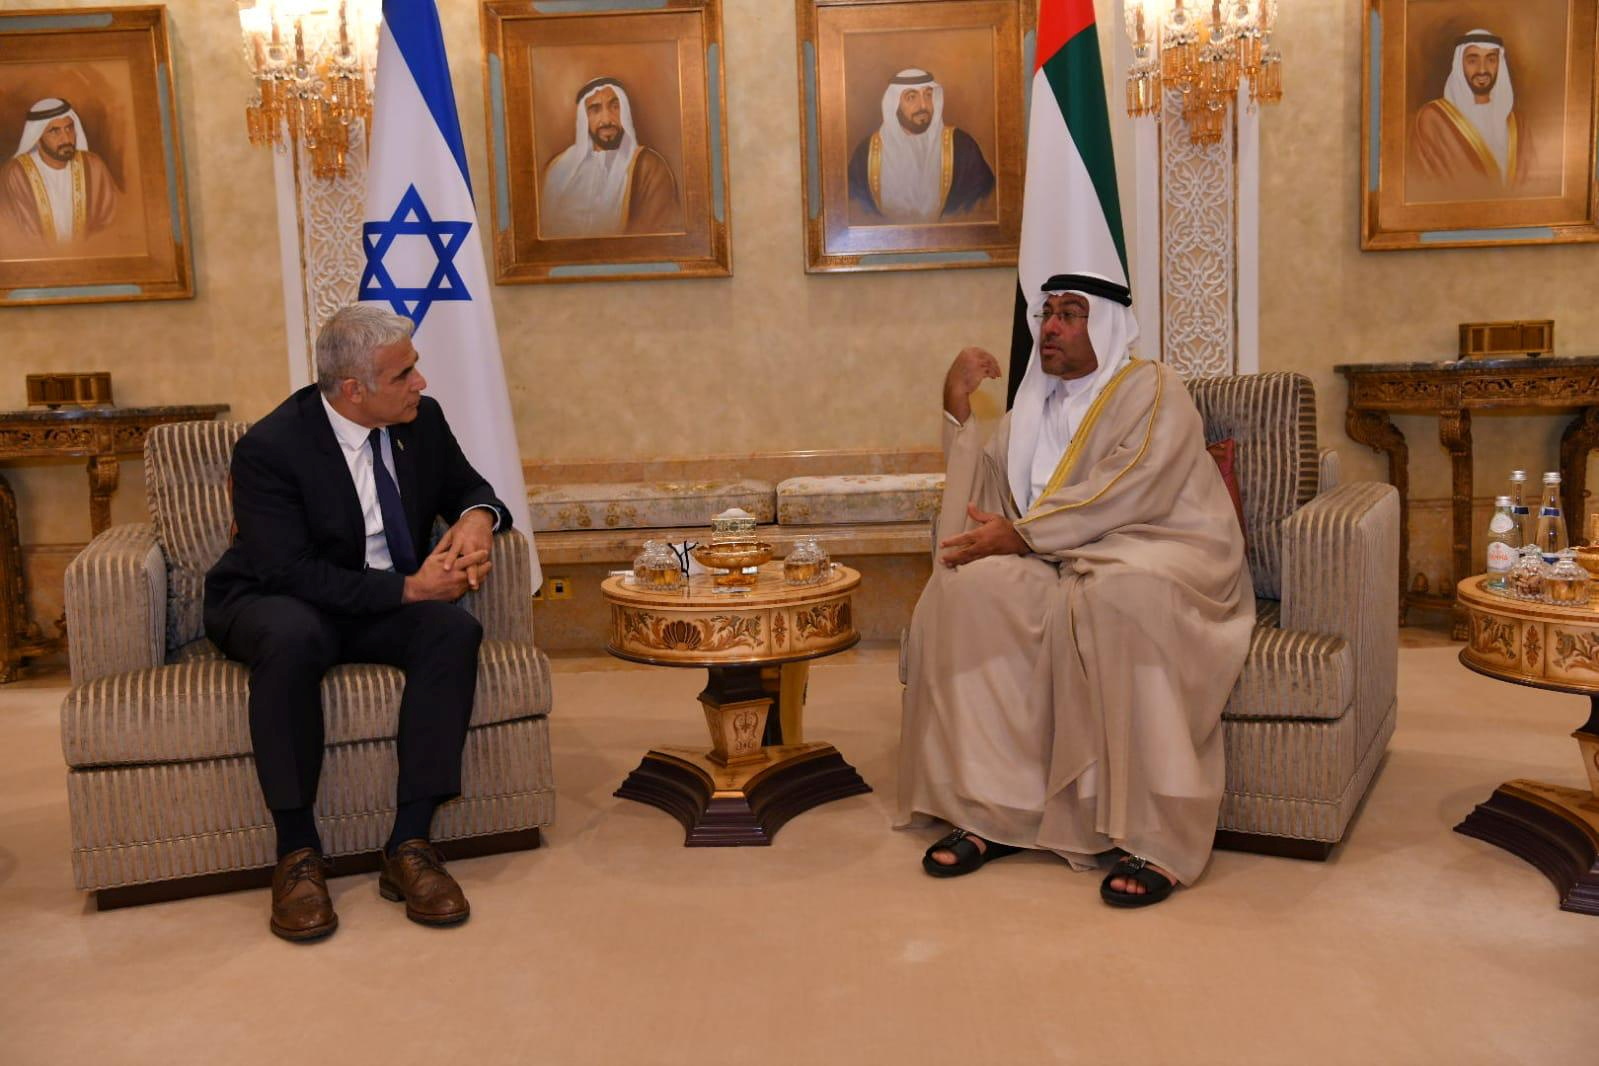 Inaugurating embassy in UAE, Israel tells region: 'We're here to stay' |  Reuters